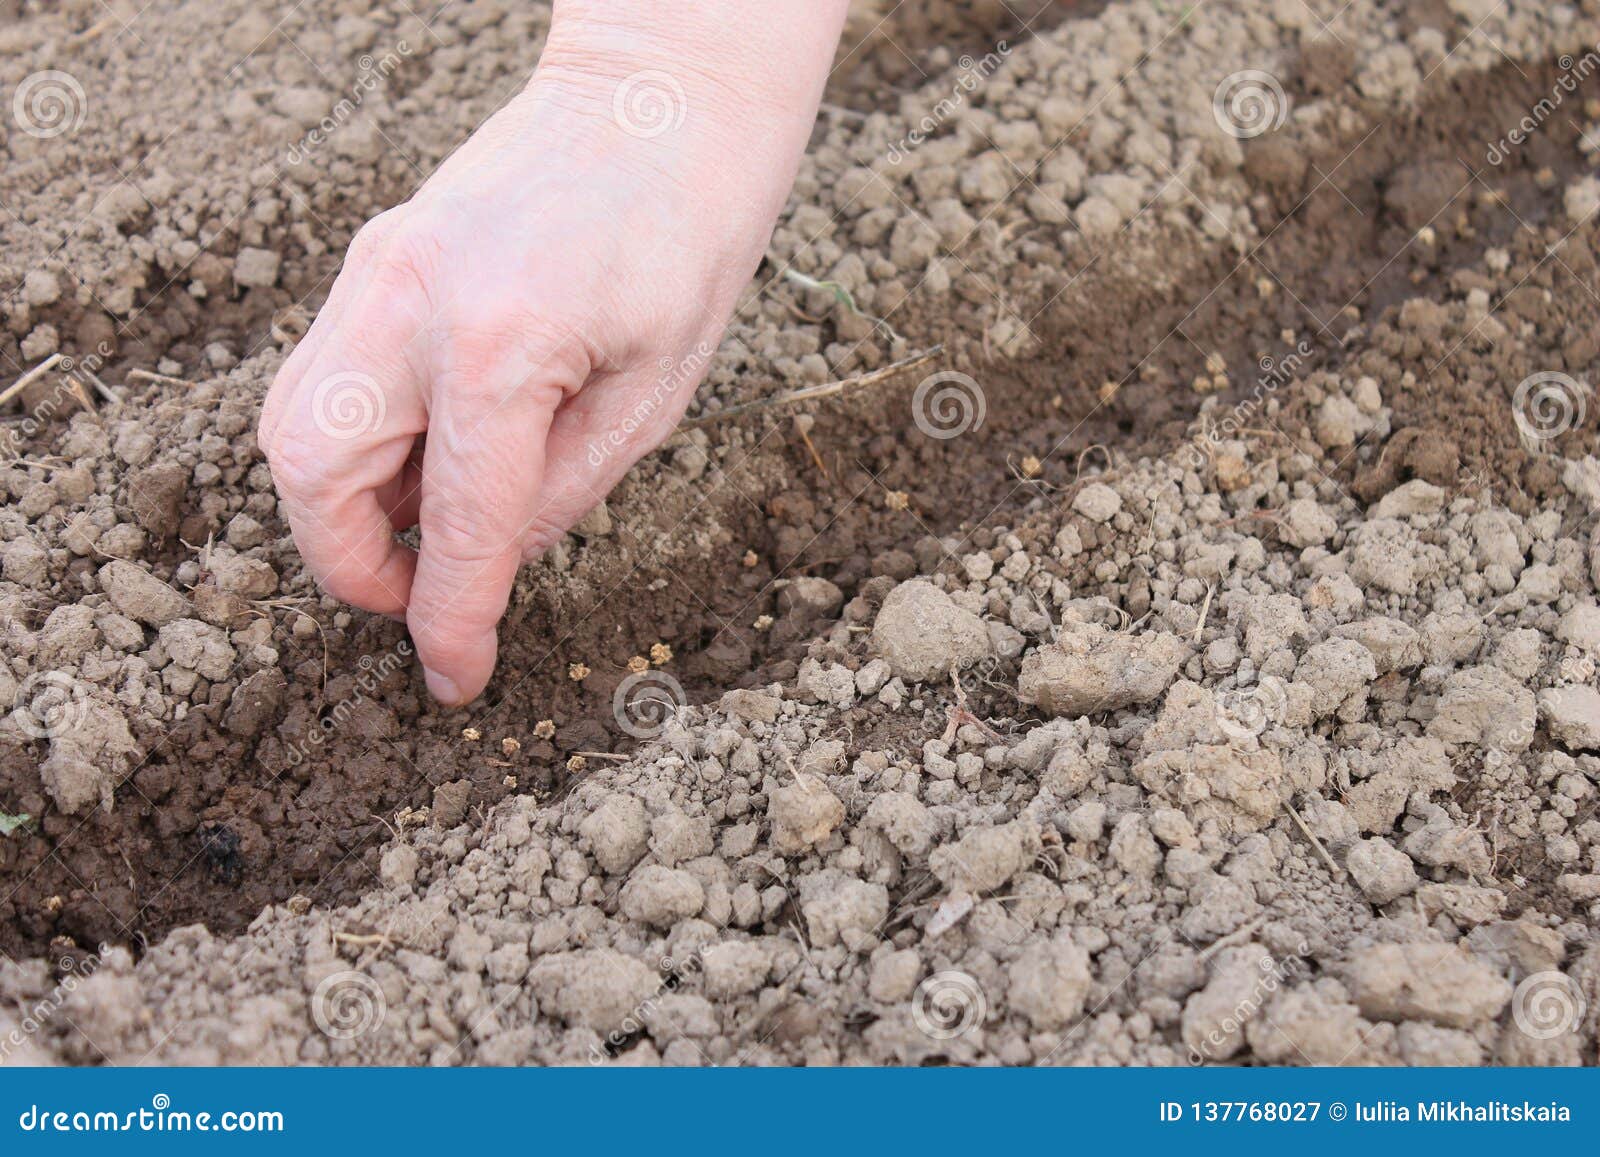 Когда сажать редис в апреле. Посадка редиса весной в открытый грунт семенами. Почва для посадки редиса. Подзимняя посадка редиса. Подготовка почвы для выращивания редиса.